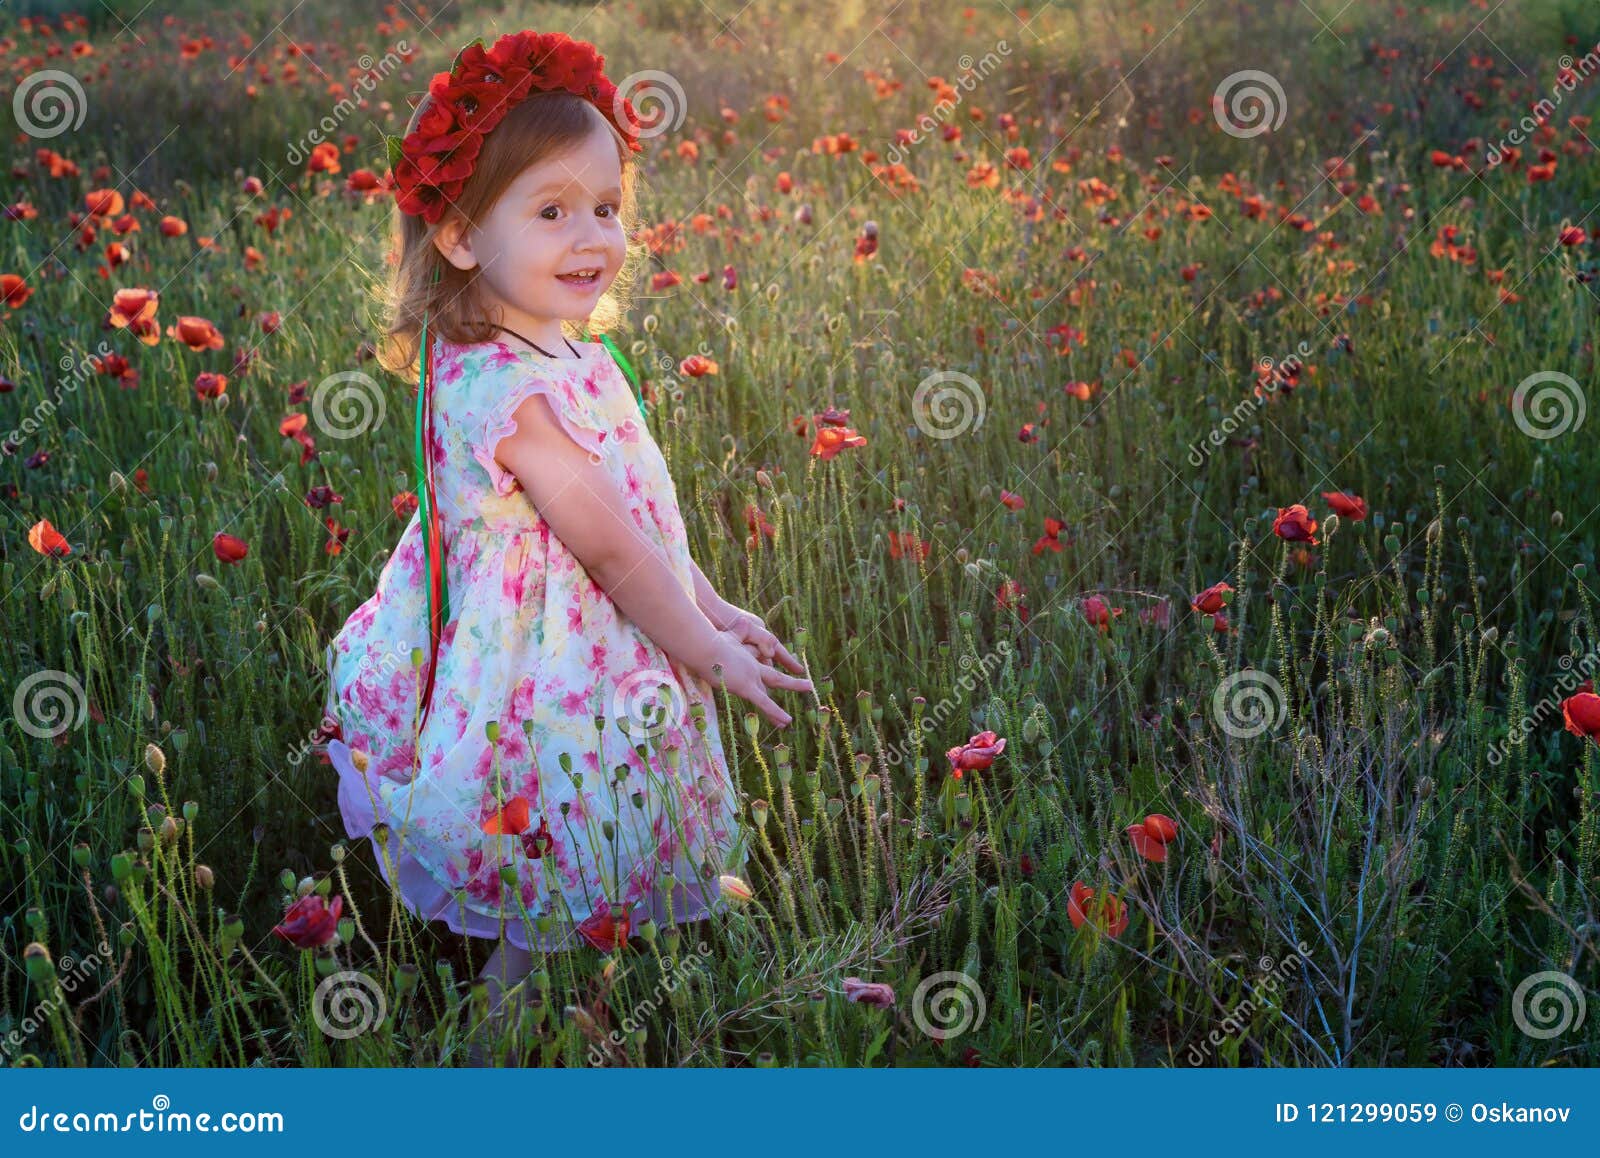 Flower child Poppy